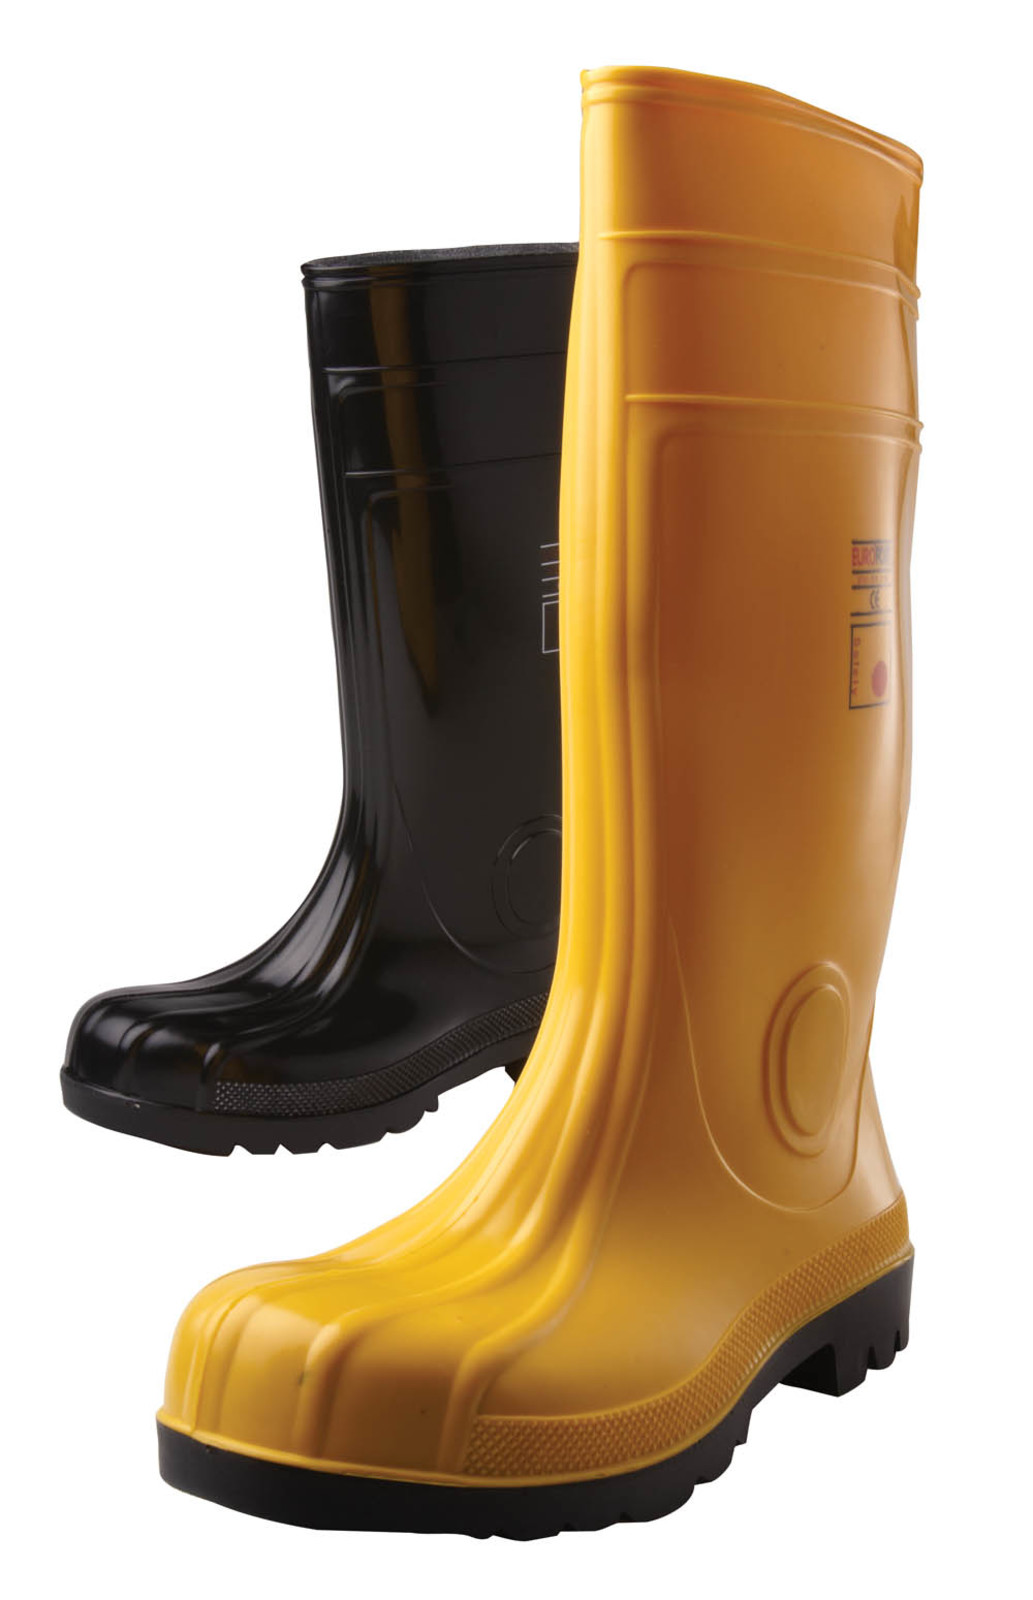 Gumáky Boots Eurofort  S5 - veľkosť: 37, farba: žltá